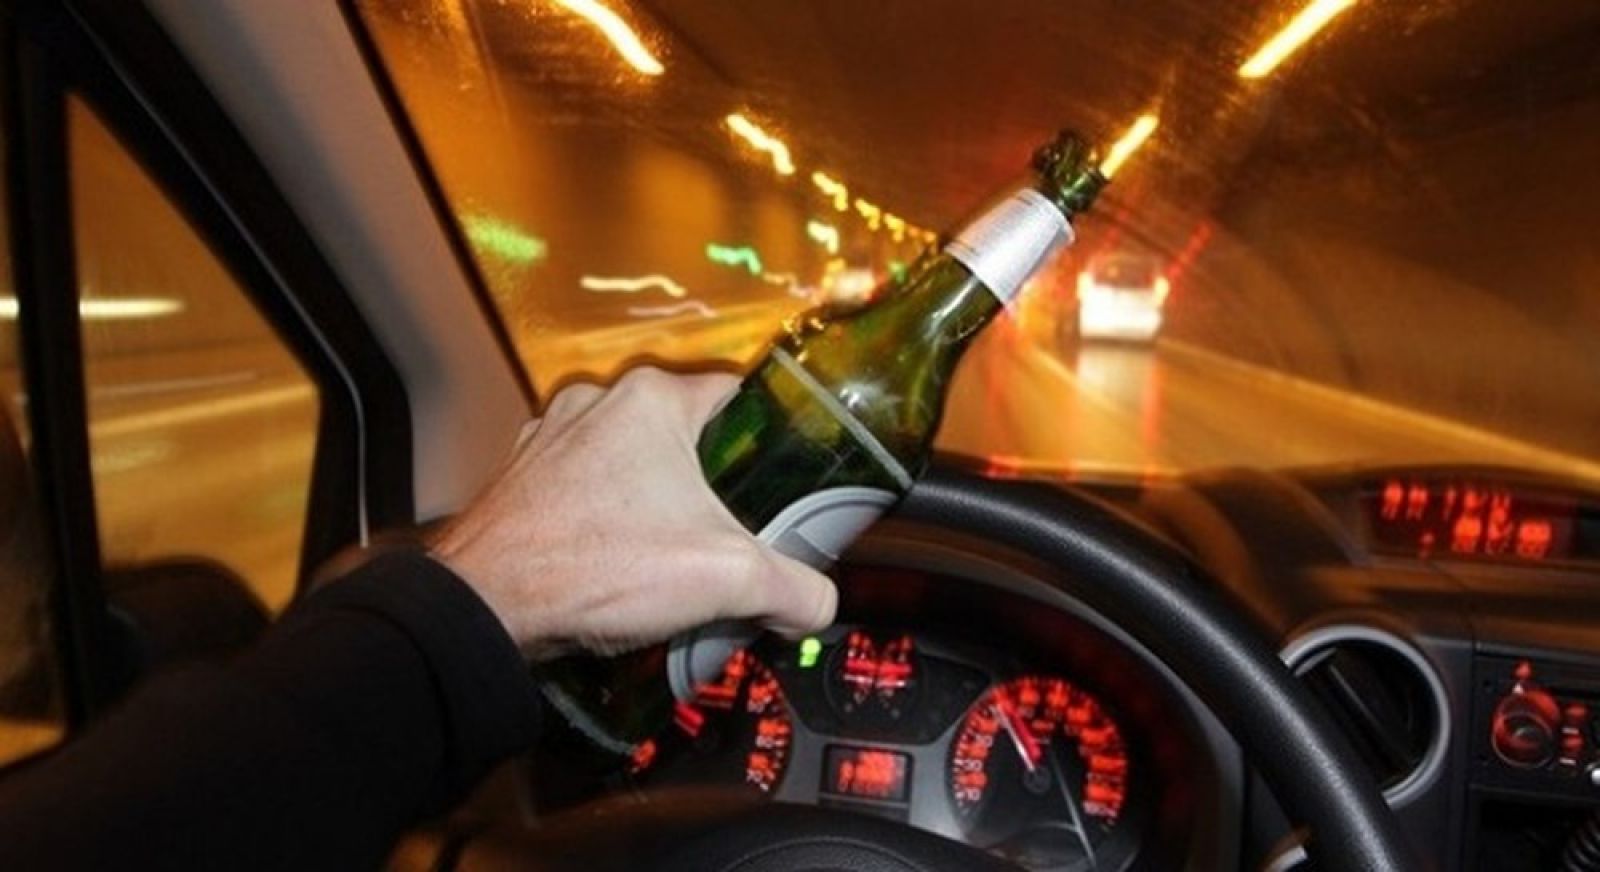 Nhiều người biết tác hại của rượu bia khi lái xe nhưng vẫn... uống